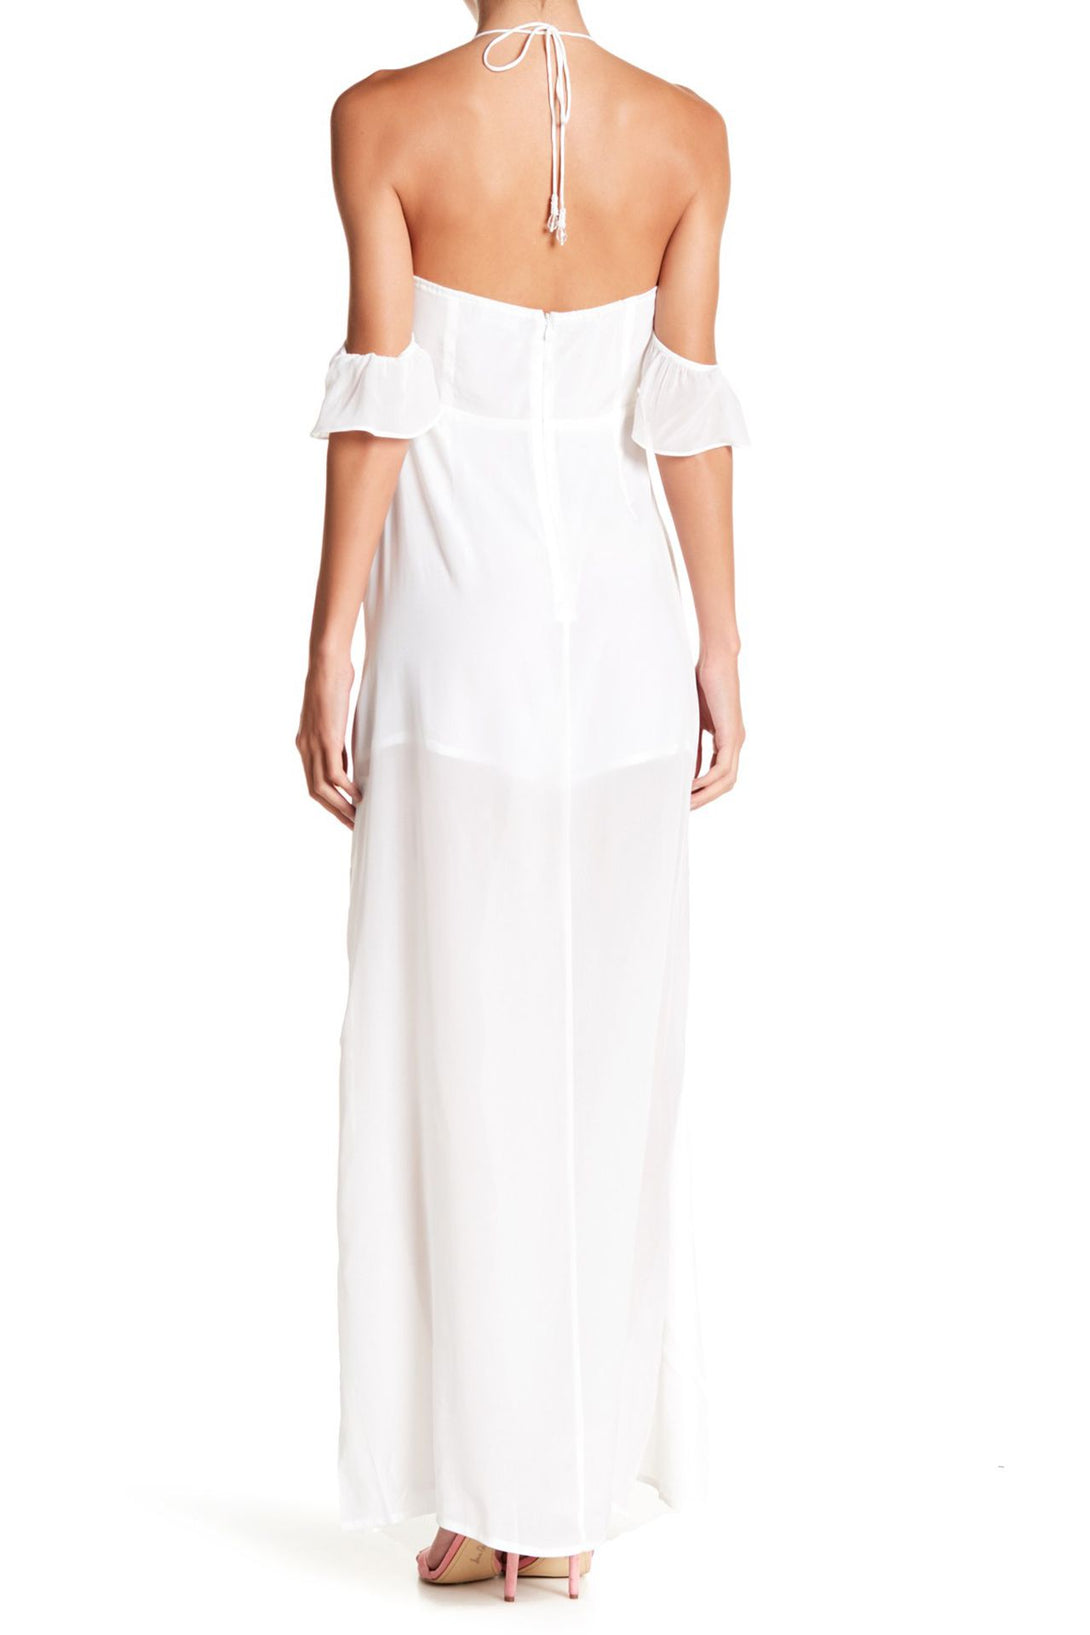  white summer maxi dress, womens cut out maxi dress, Shahida Parides, summer maxi dresses for women,